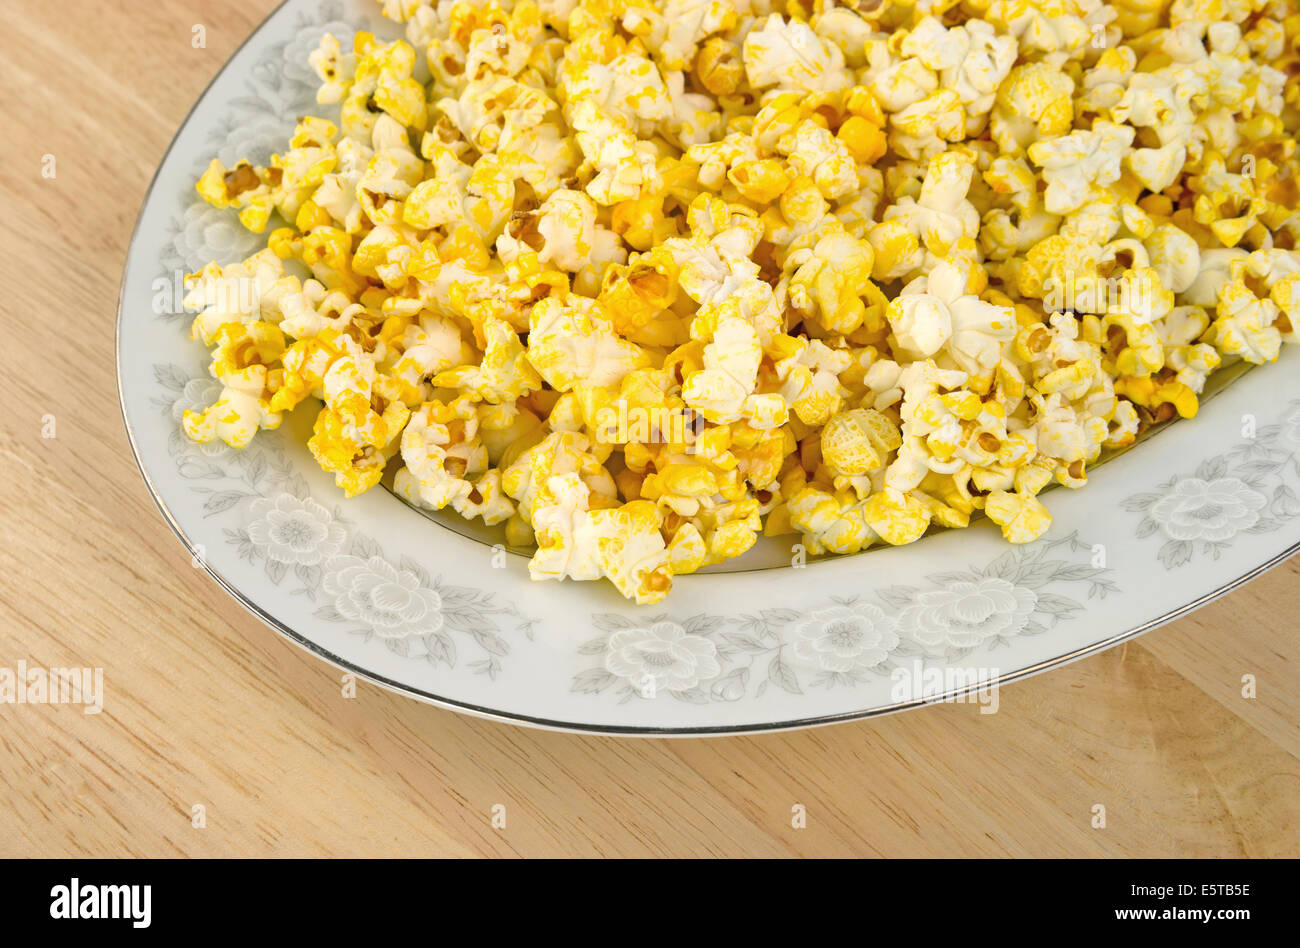 Chiudere la vista di un piatto riempito con popcorn su un tavolo da pranzo. Foto Stock